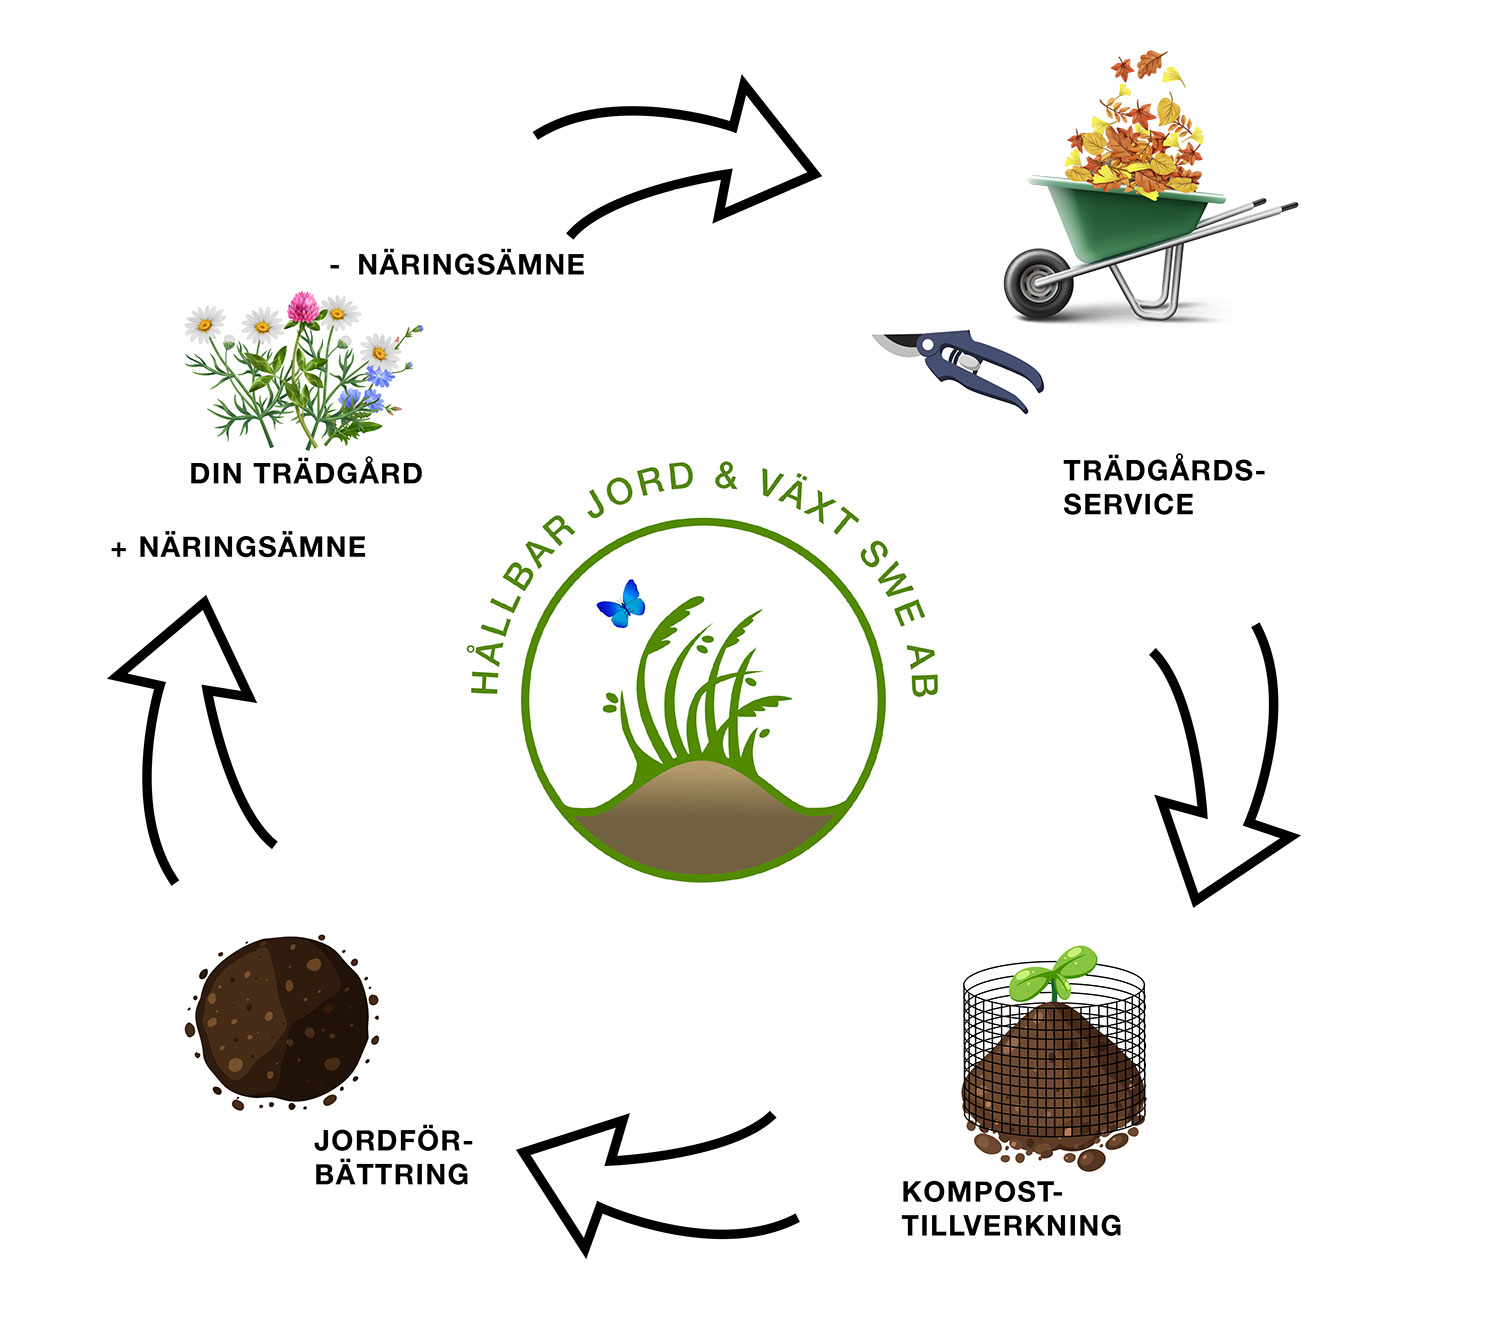 Trädgårds service - circular system | Hållbar Jord och Växt